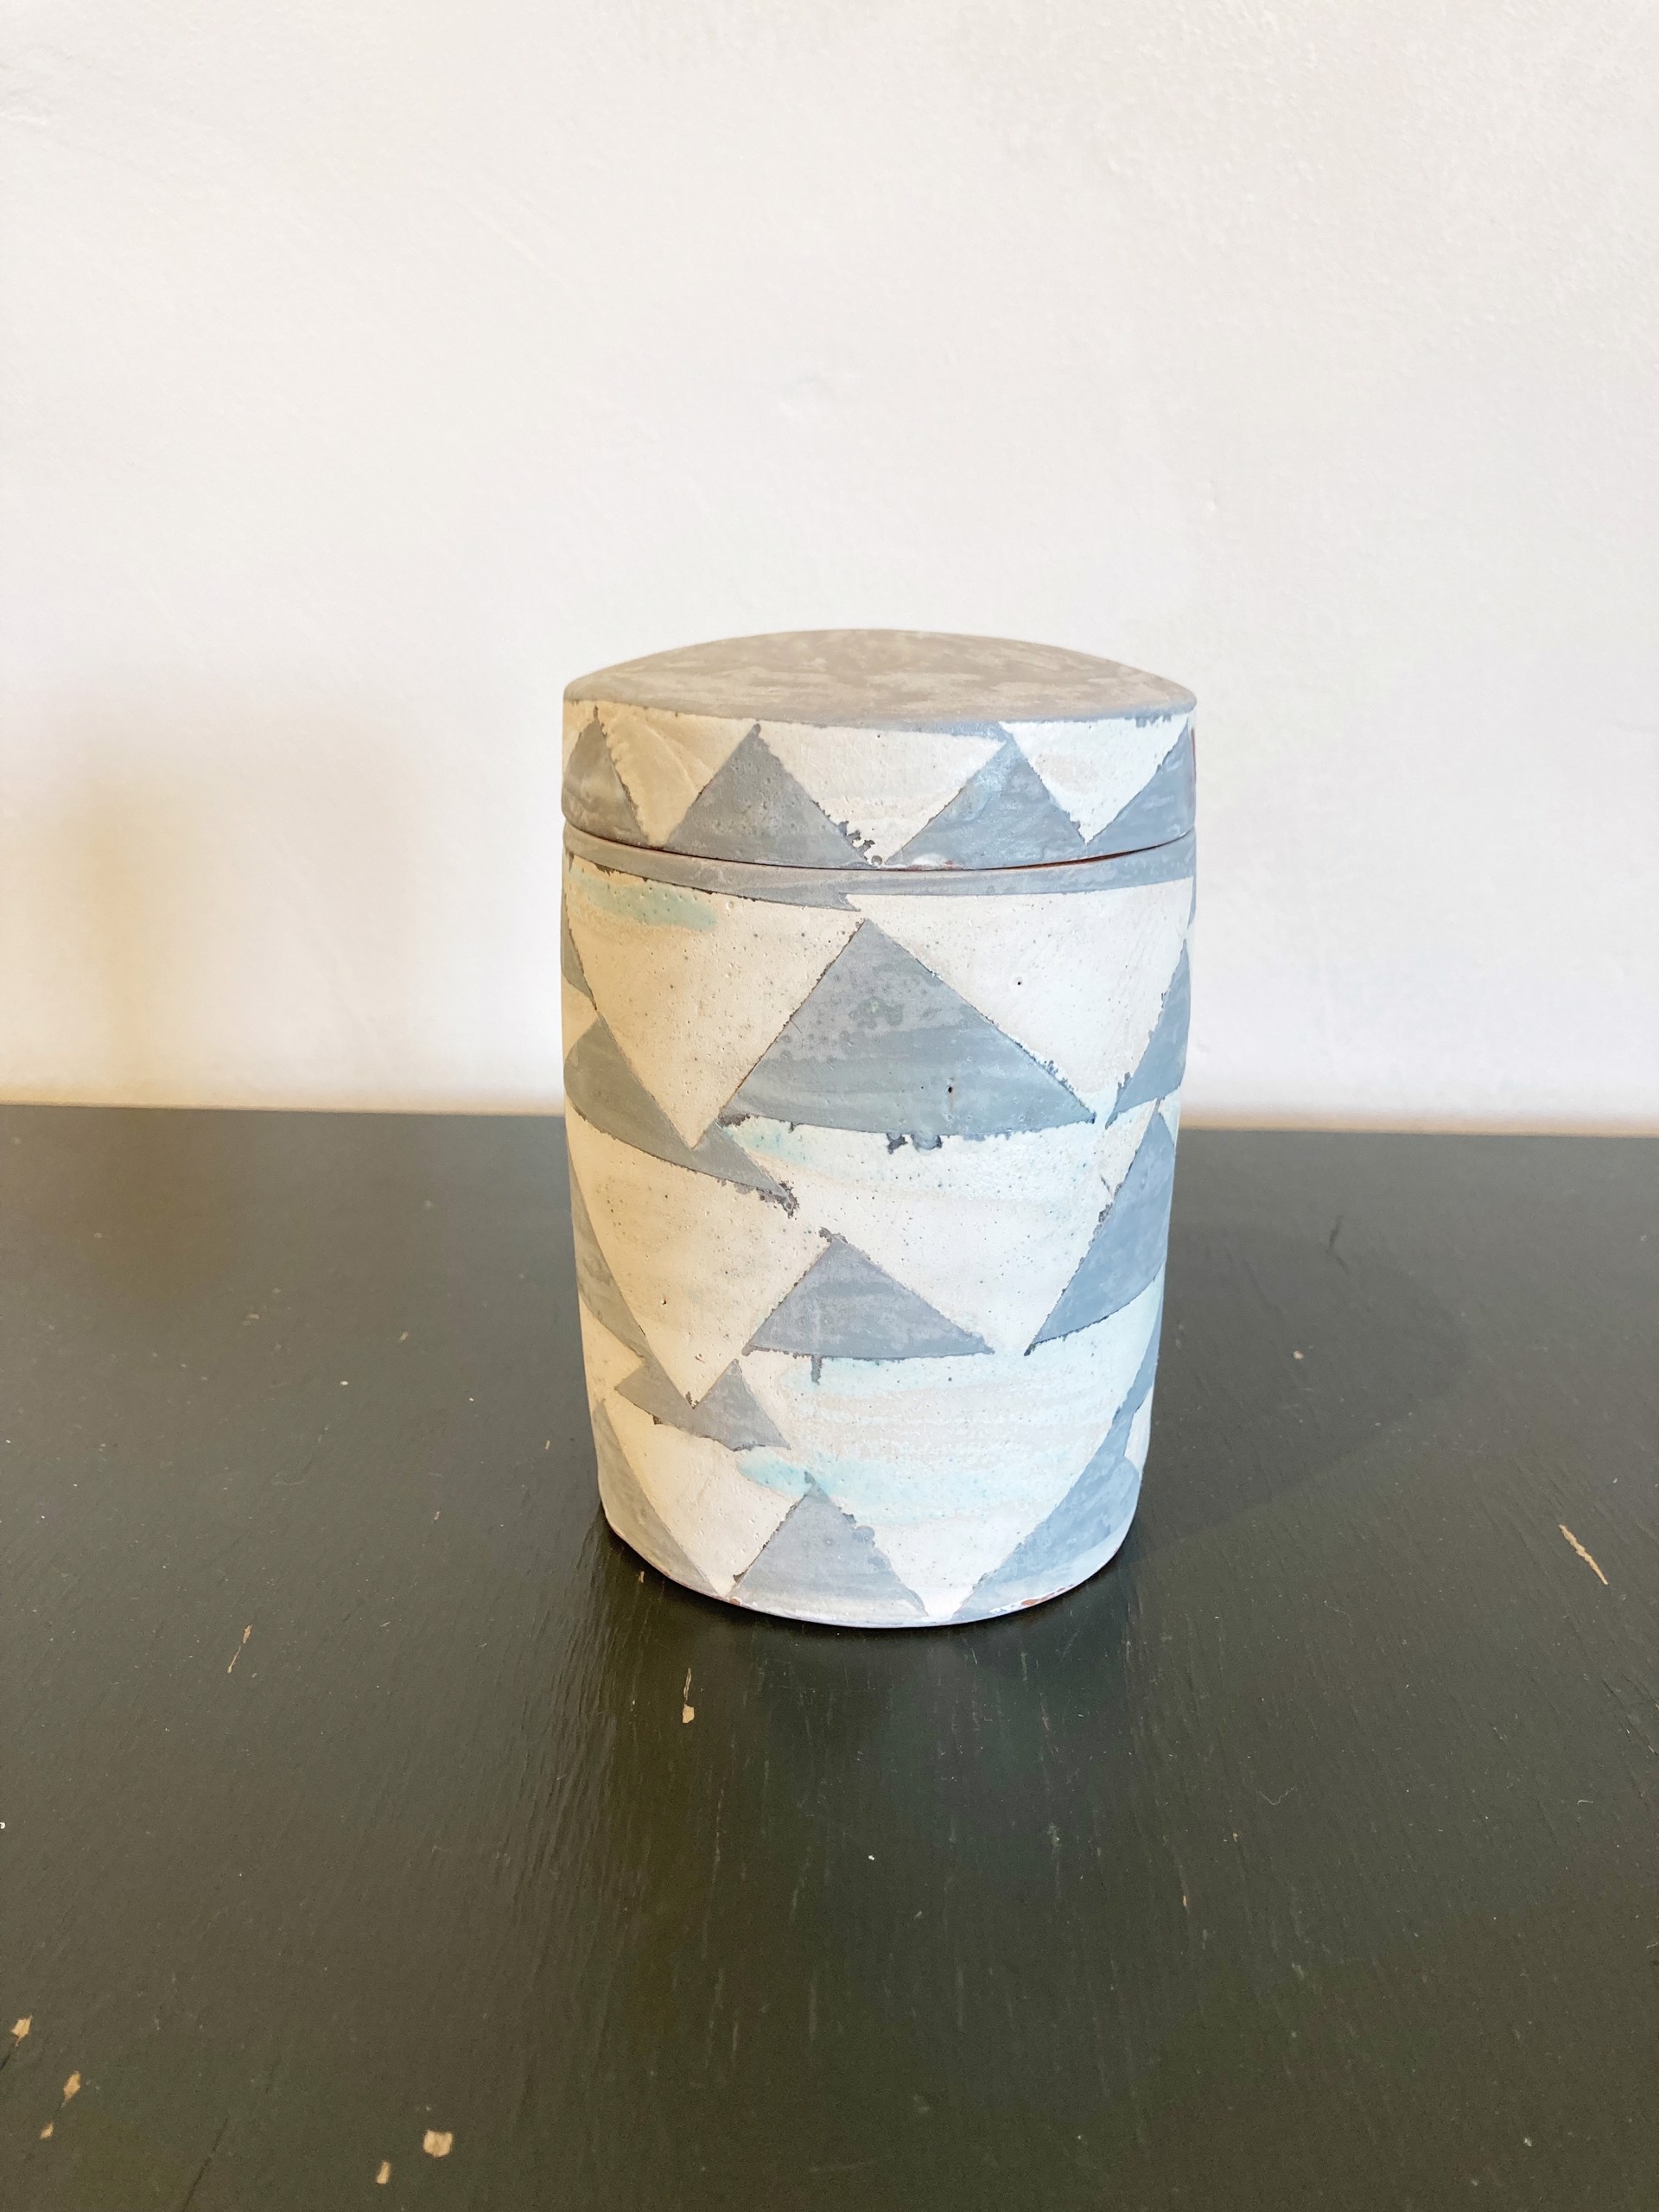 Lidded Jar by Maggie Jaszczak